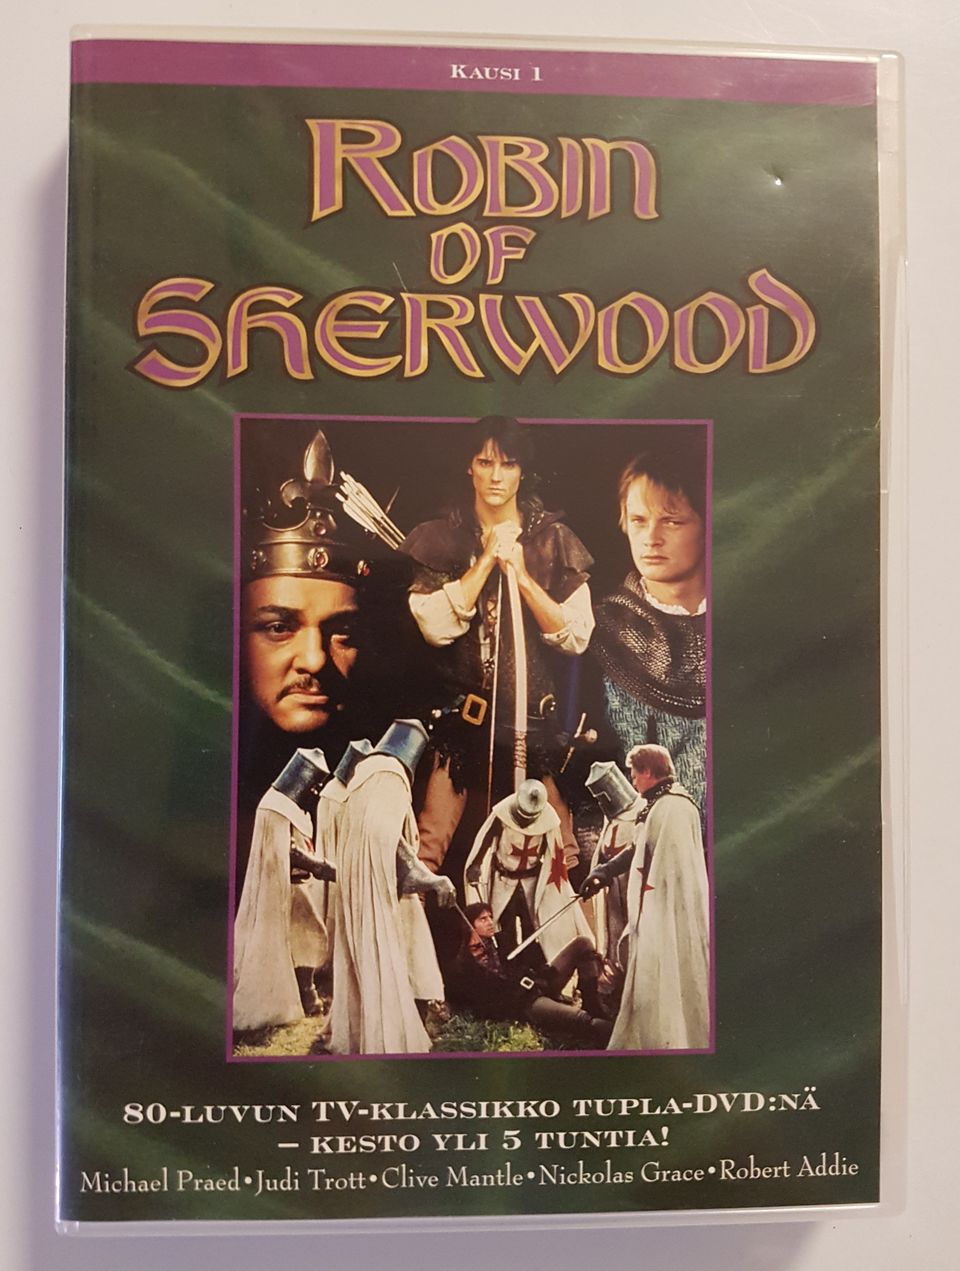 Robin of Sherwood kausi 1, suht harvinainen suomijulkaisu